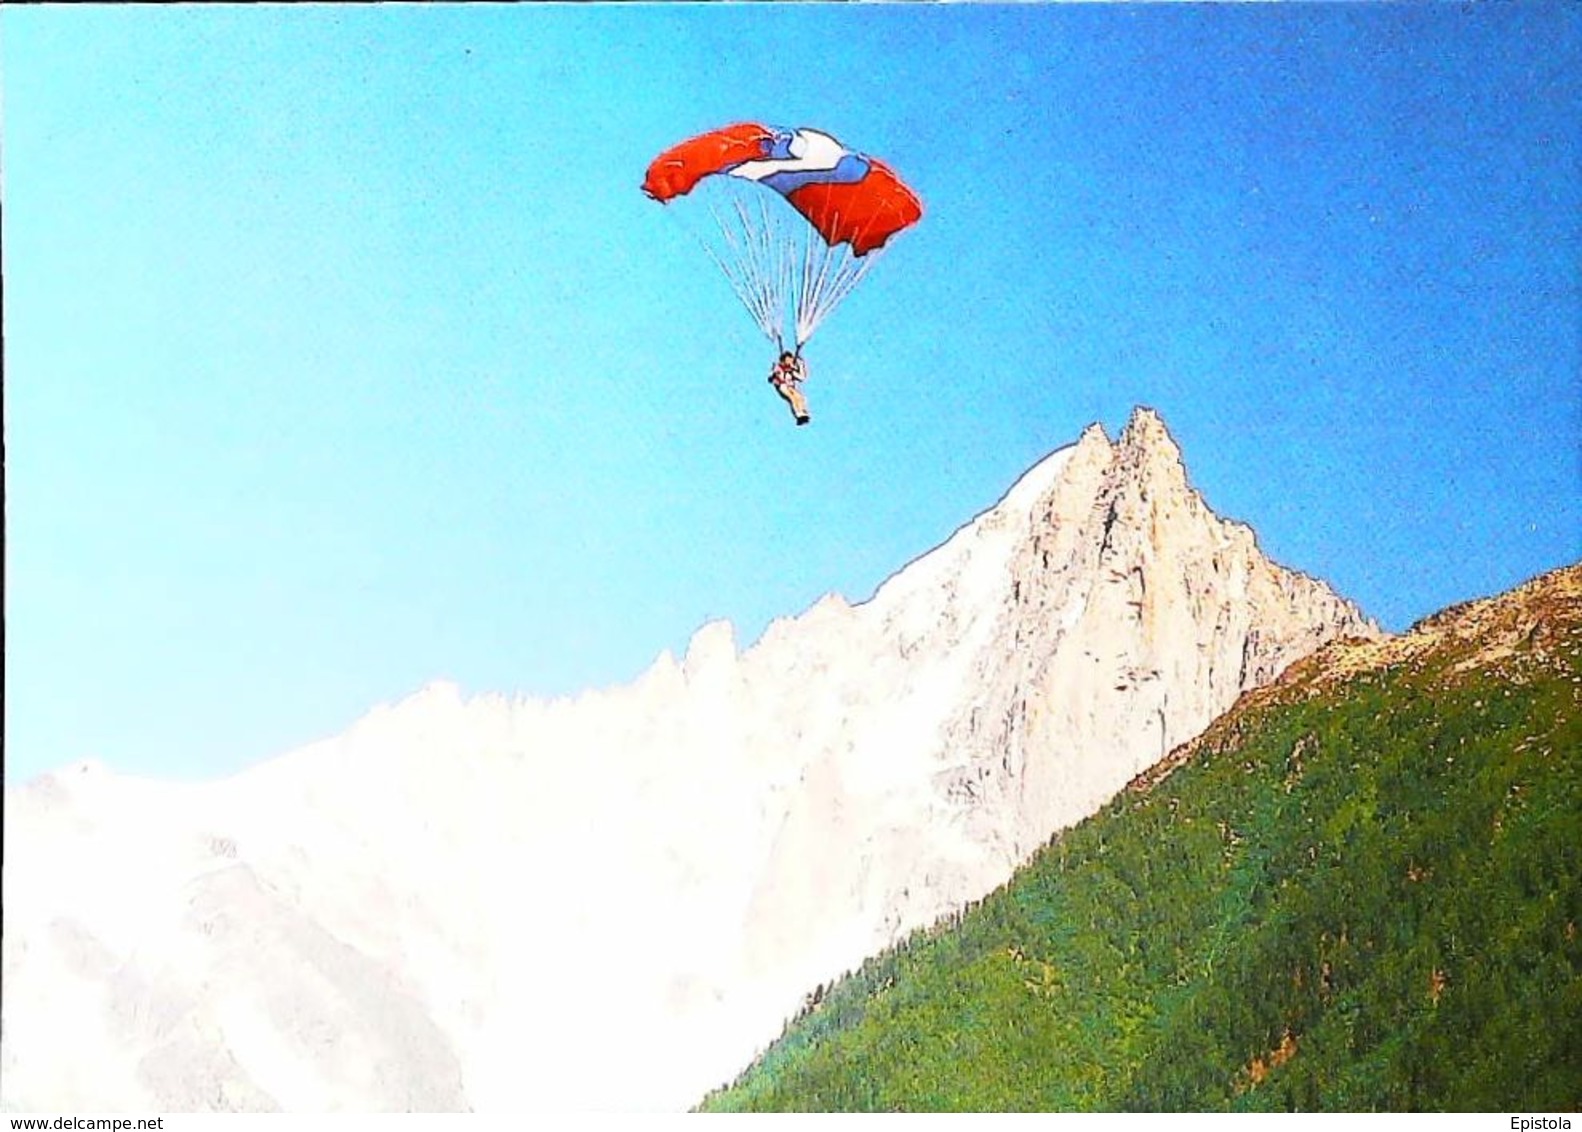 Parapente Les DRUS  (Mont Blanc) -  CPM Non Voyagé - Parachutisme